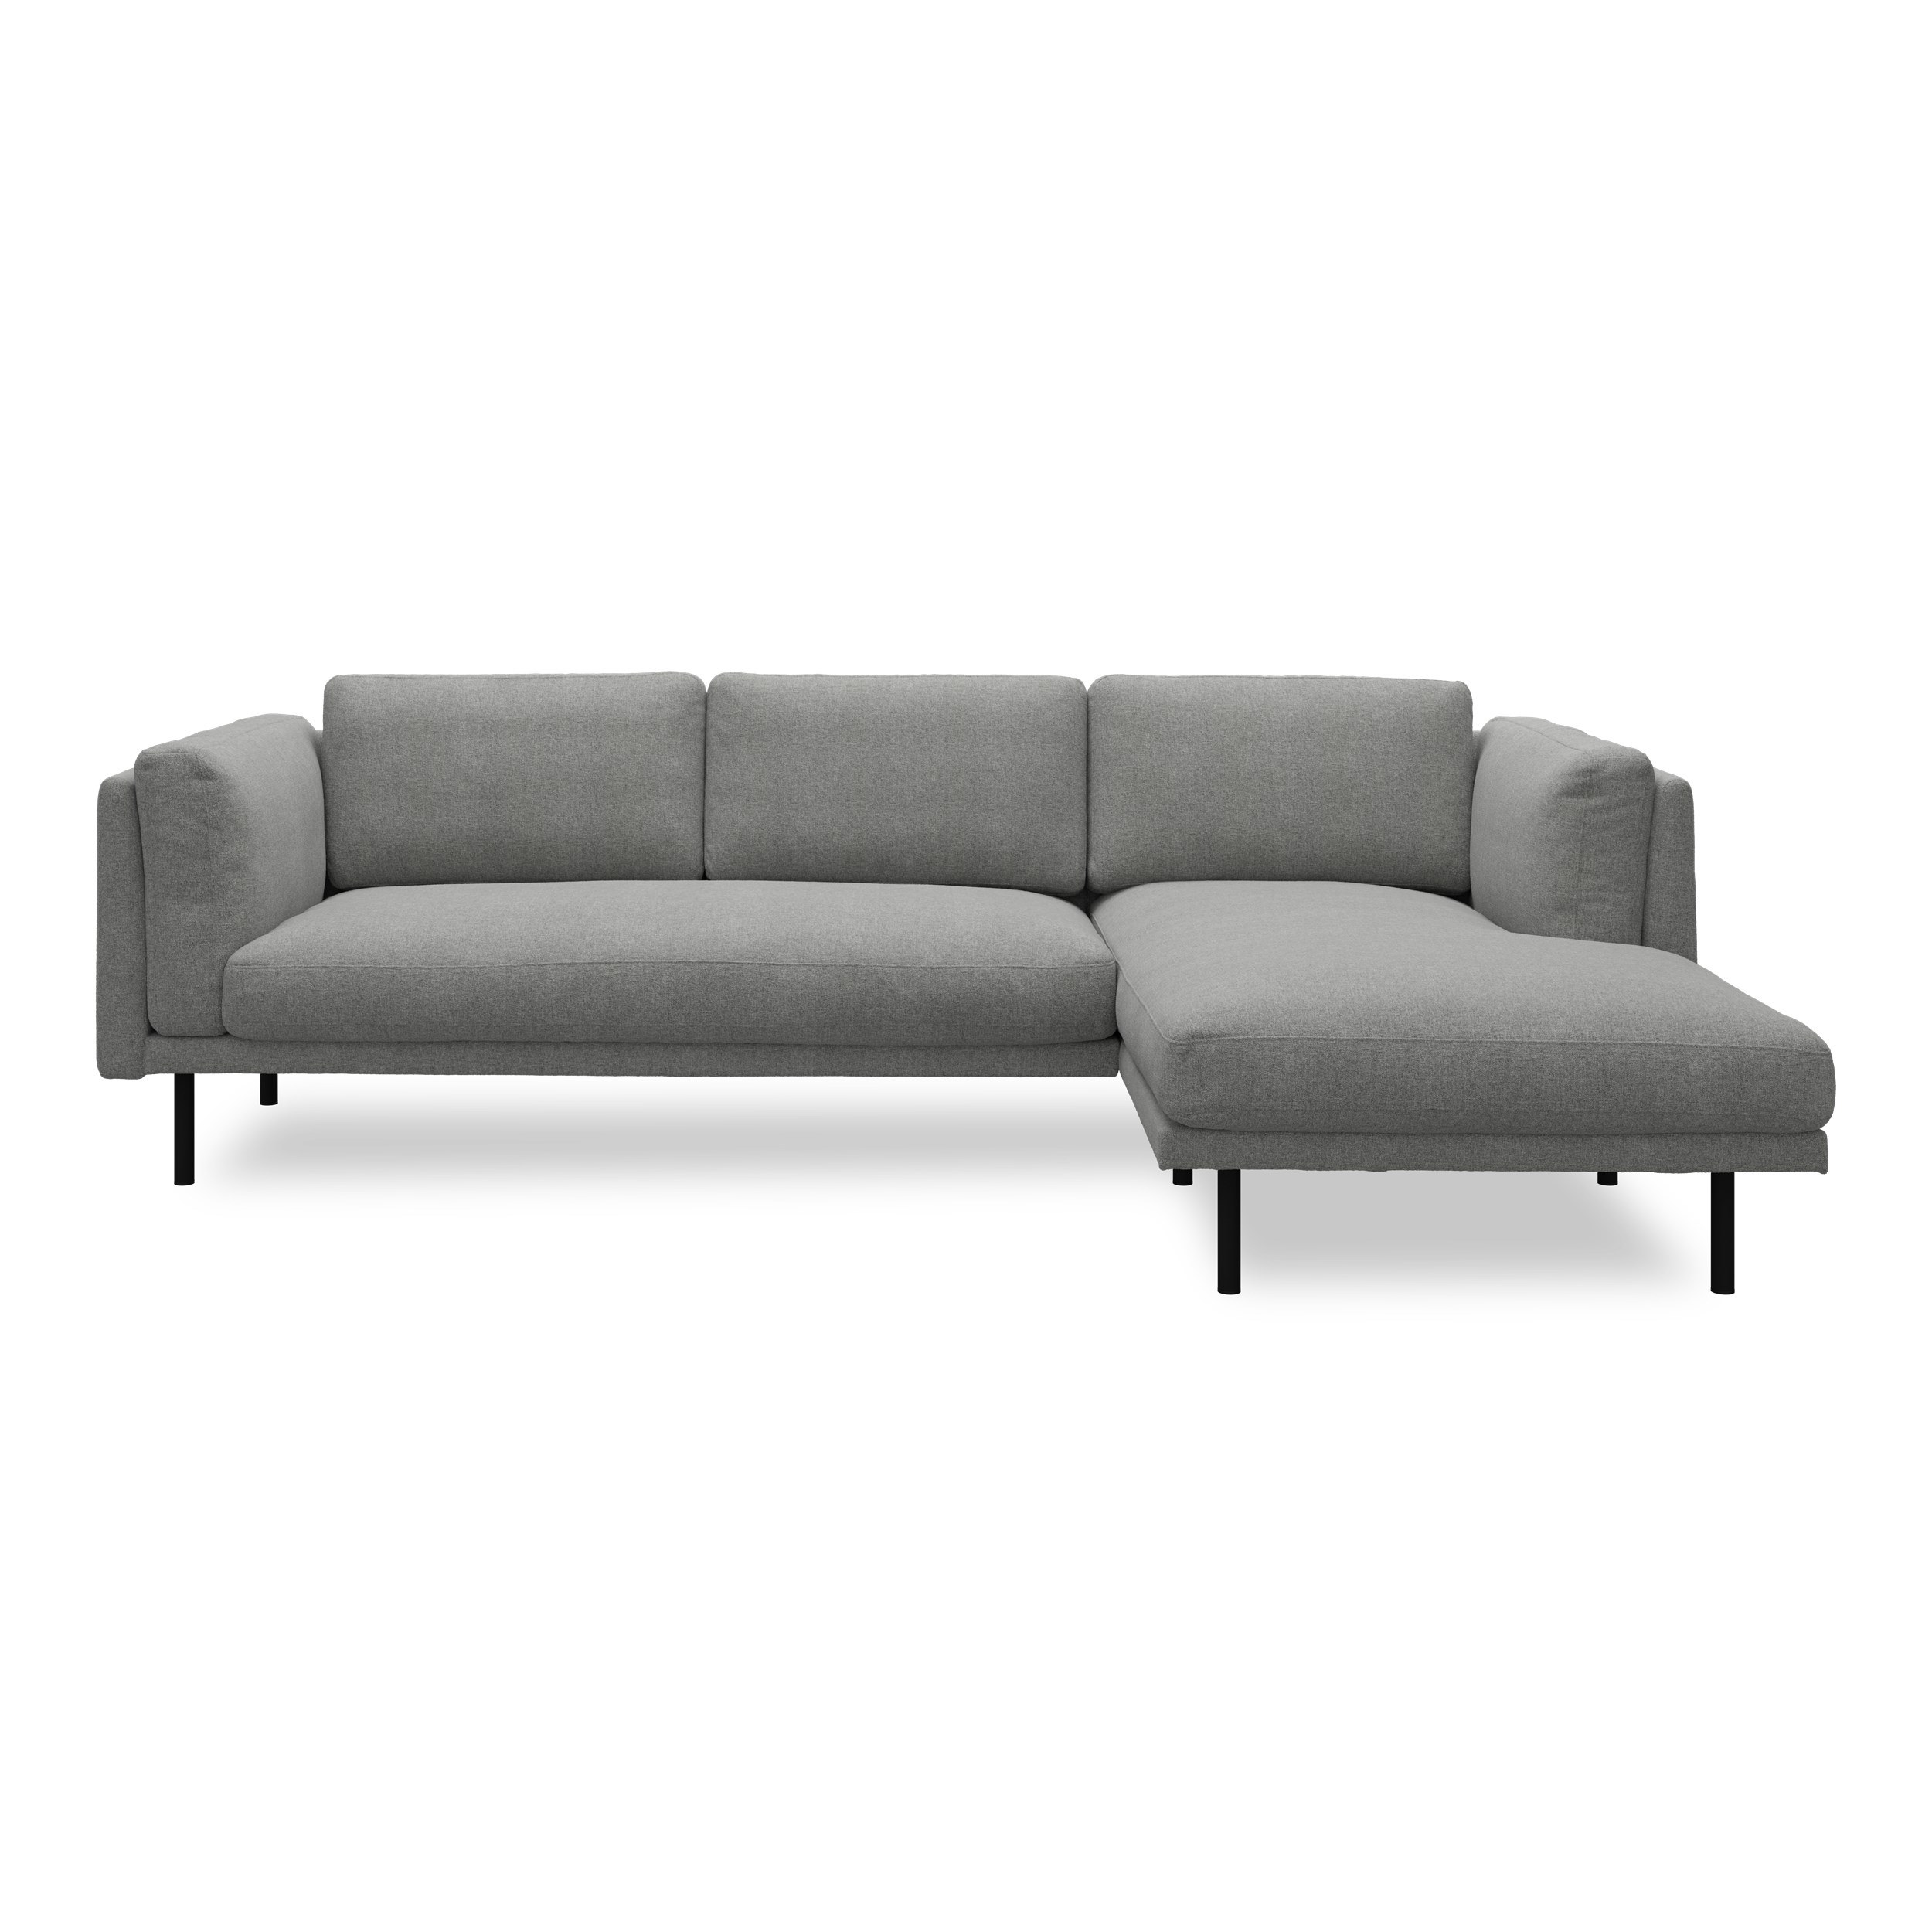 Nebel högervänd soffa med schäslong - Soil 167 Zinc textil och svart pulverlackerad metall